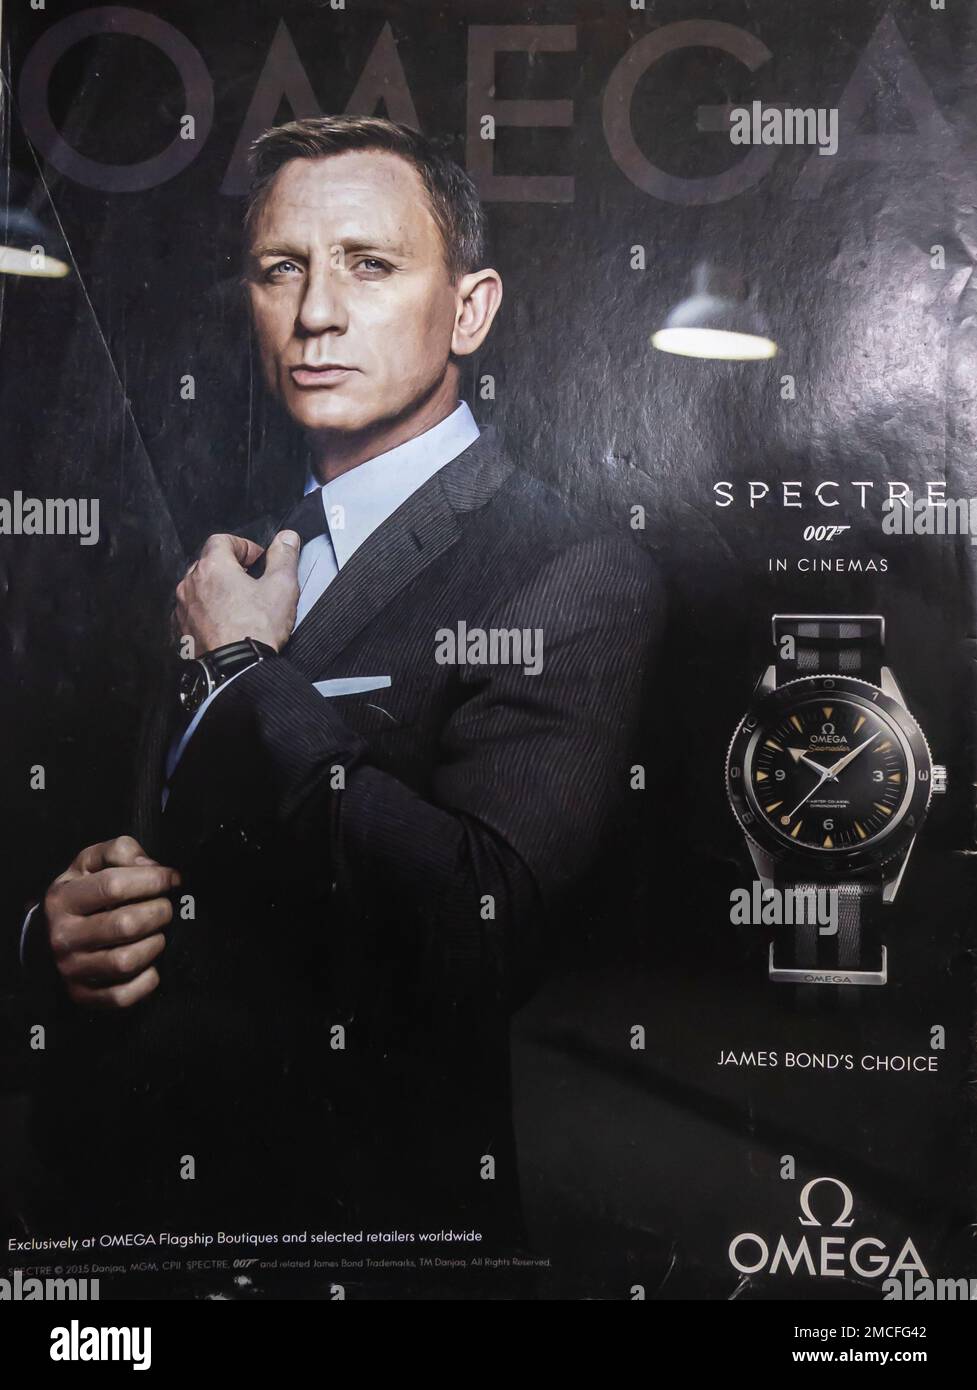 2015 Omega Seamaster Spectre 007 guarda la pubblicità di James Bond Spectre con Daniel Craig in una rivista Time Foto Stock